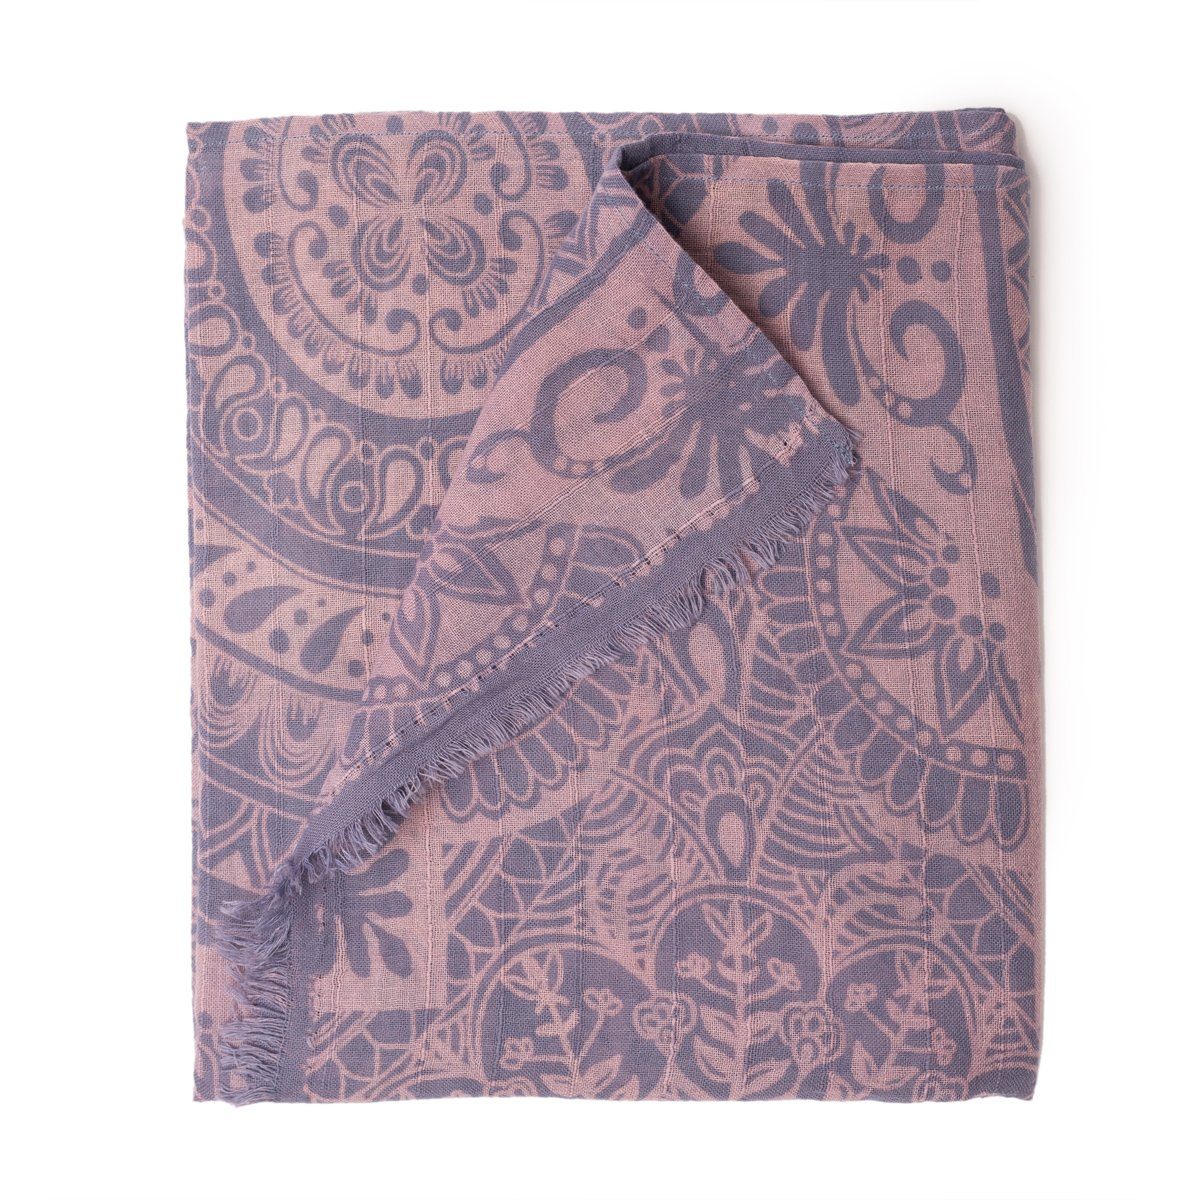 PANASIAM Halstuch elegantes Schaltuch auch als Schultertuch Schal oder Stola tragbar, in schönen farbigen Designs mit kleinen Fransen aus Baumwolle Mandala blau